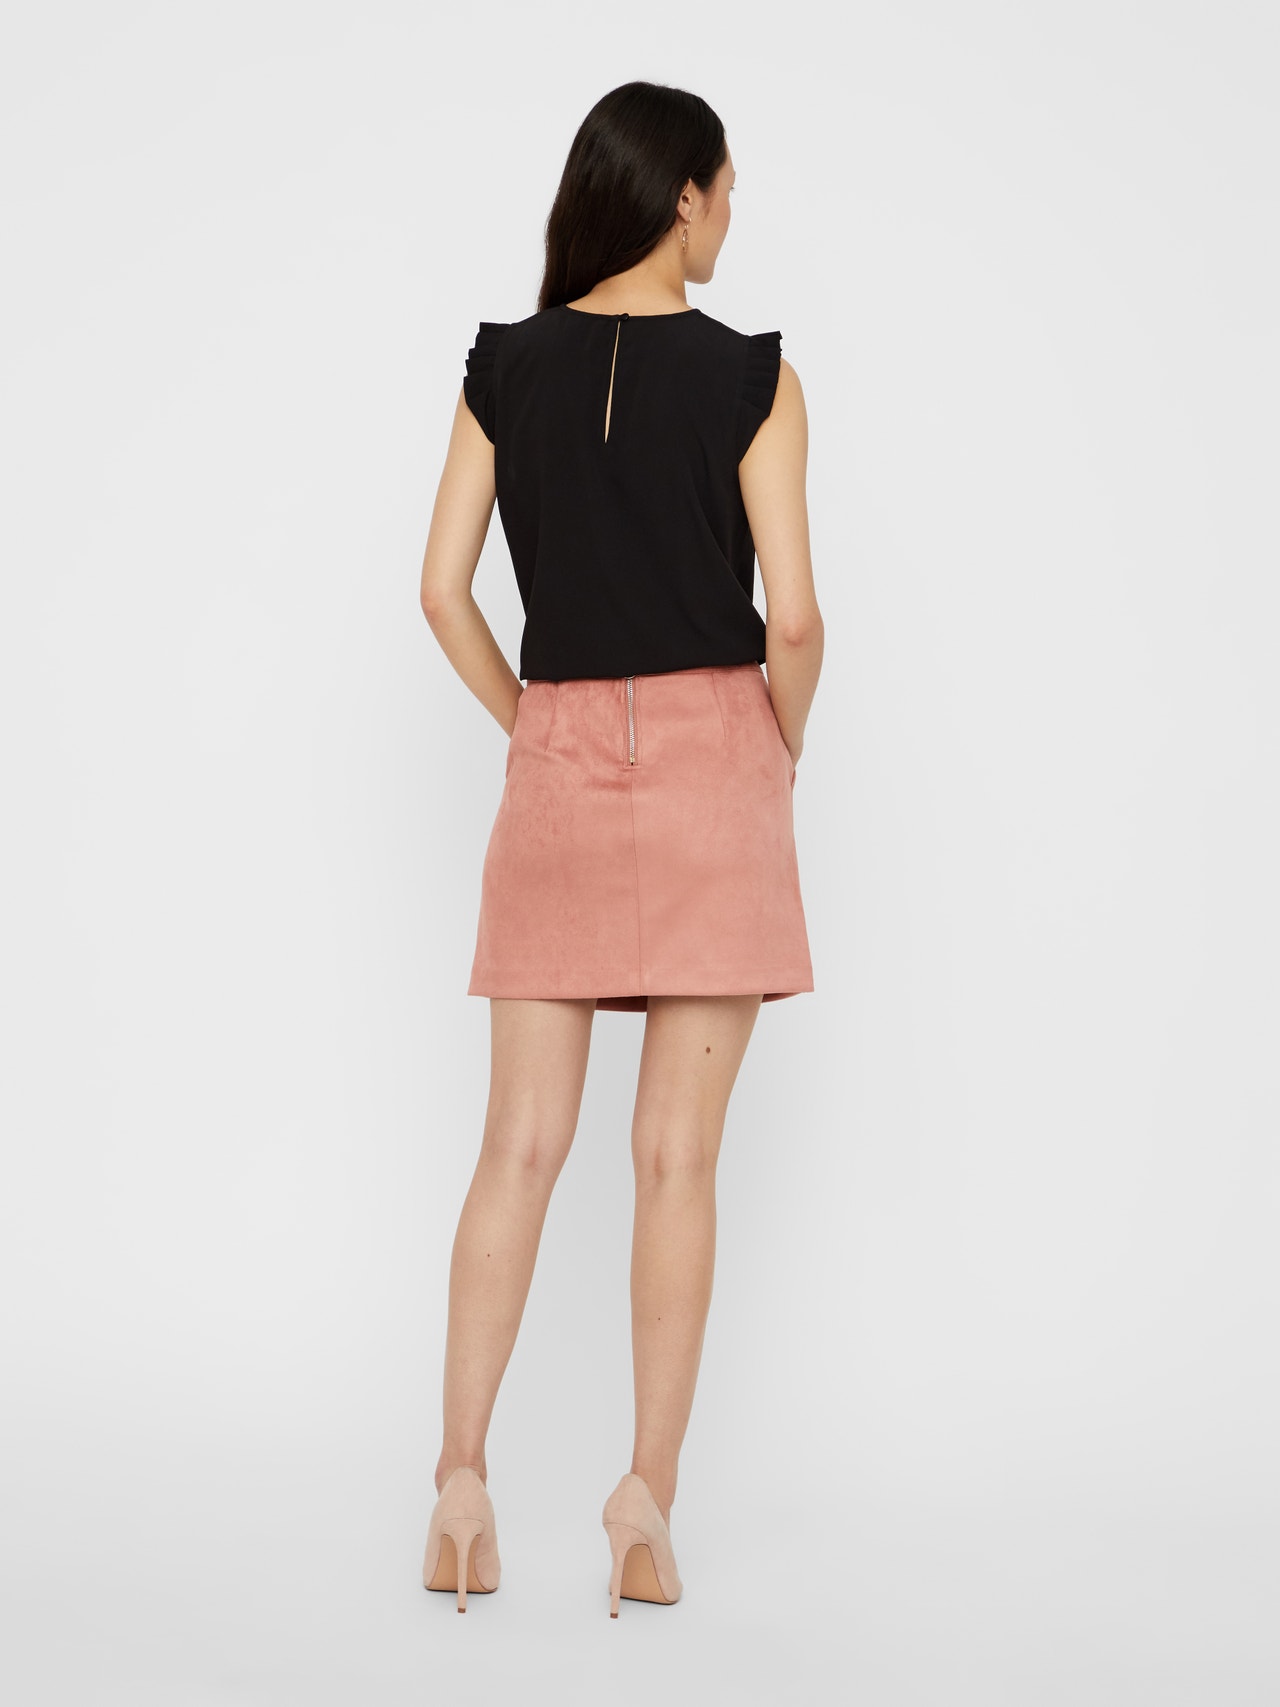 Vero Moda VMDONNADINA Short skirt -Old Rose - 10210430